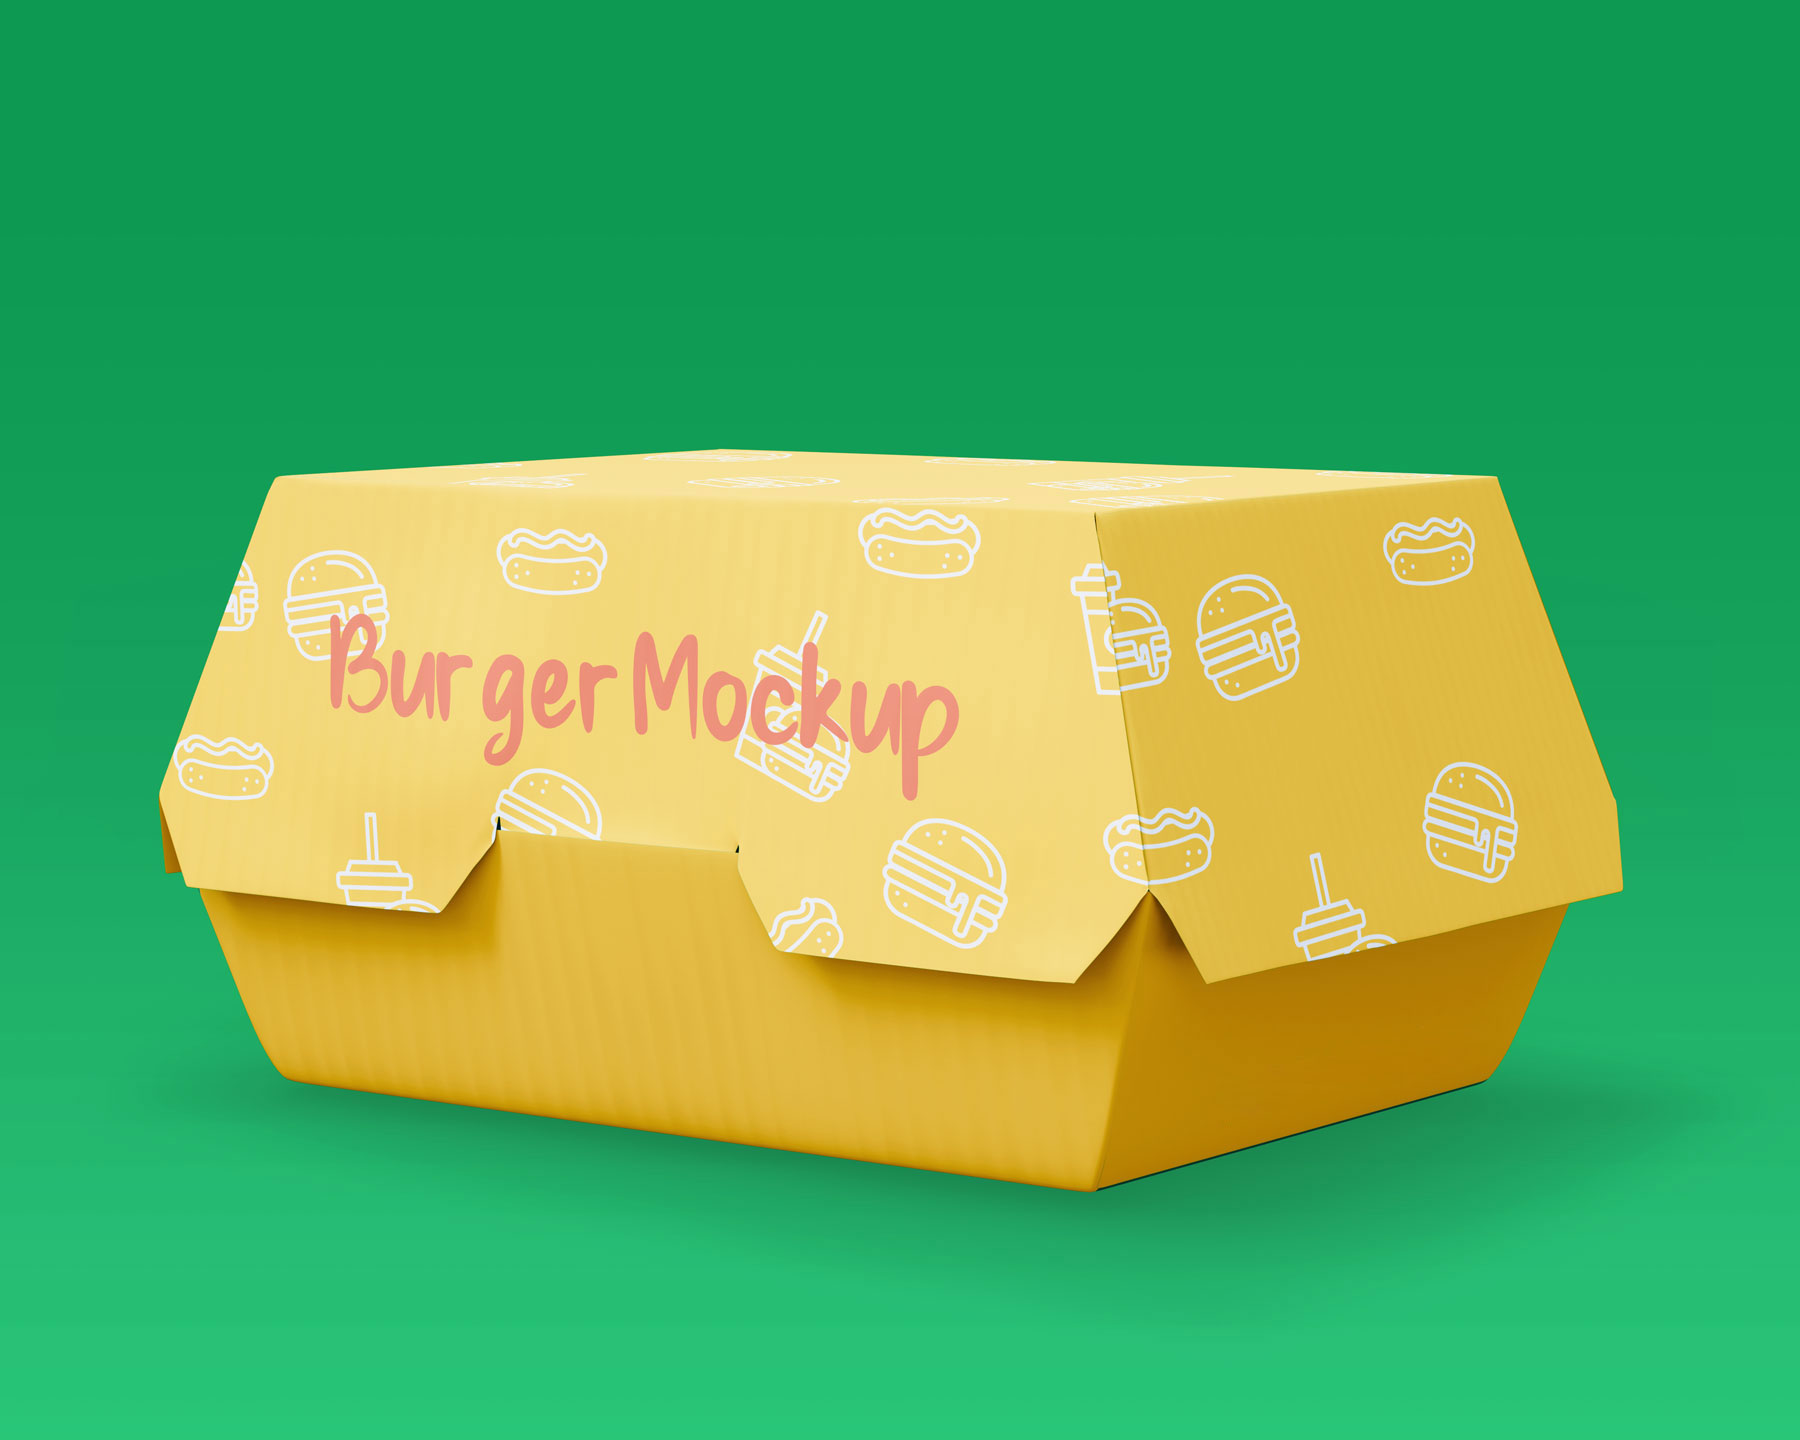 Free Soda Cup and Burger Box Mockup :: Behance